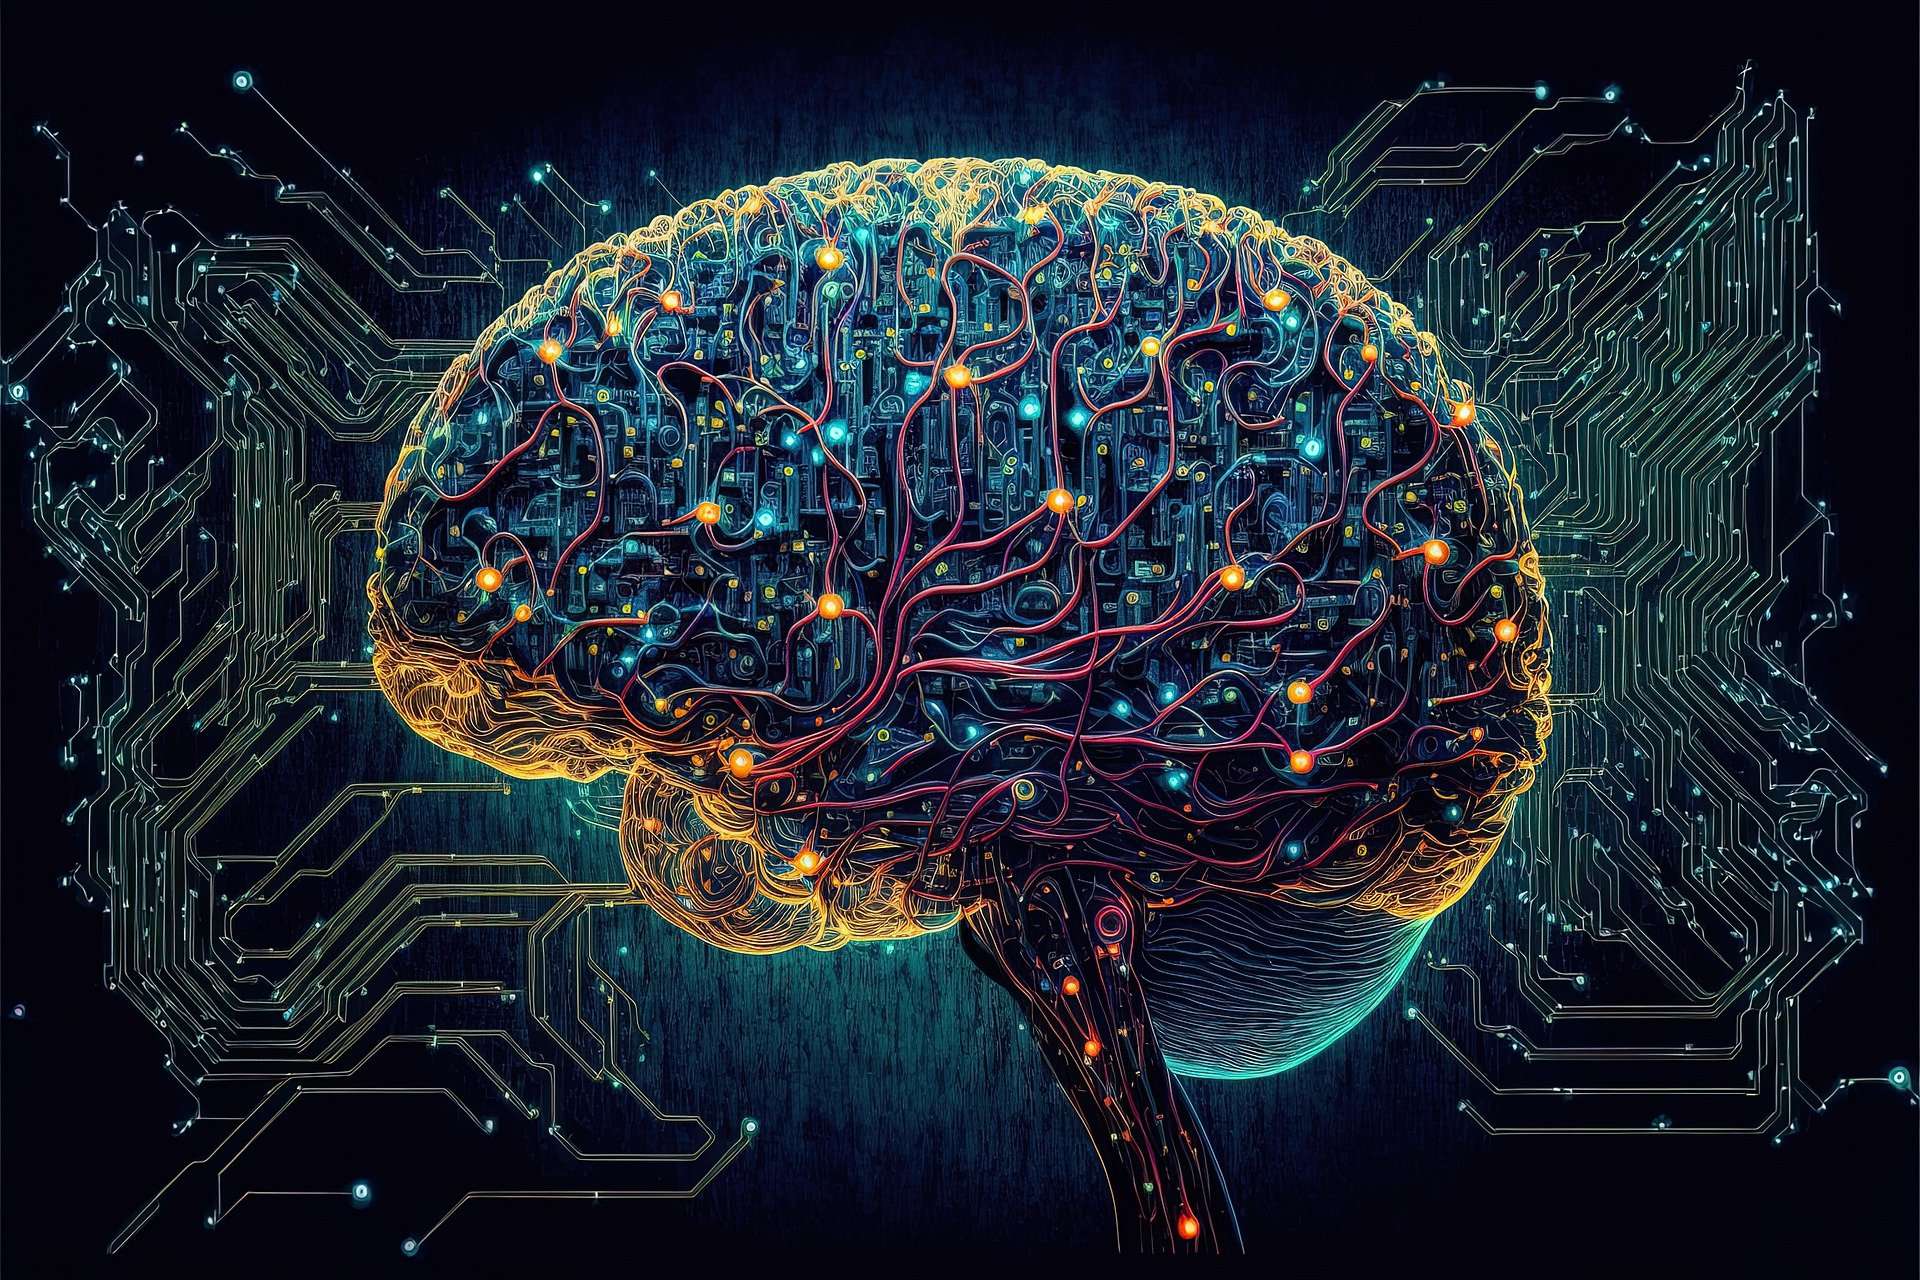 L’intelligenza artificiale svela il segreto delle idee visive decodificando e ricostruendo le immagini mentali!